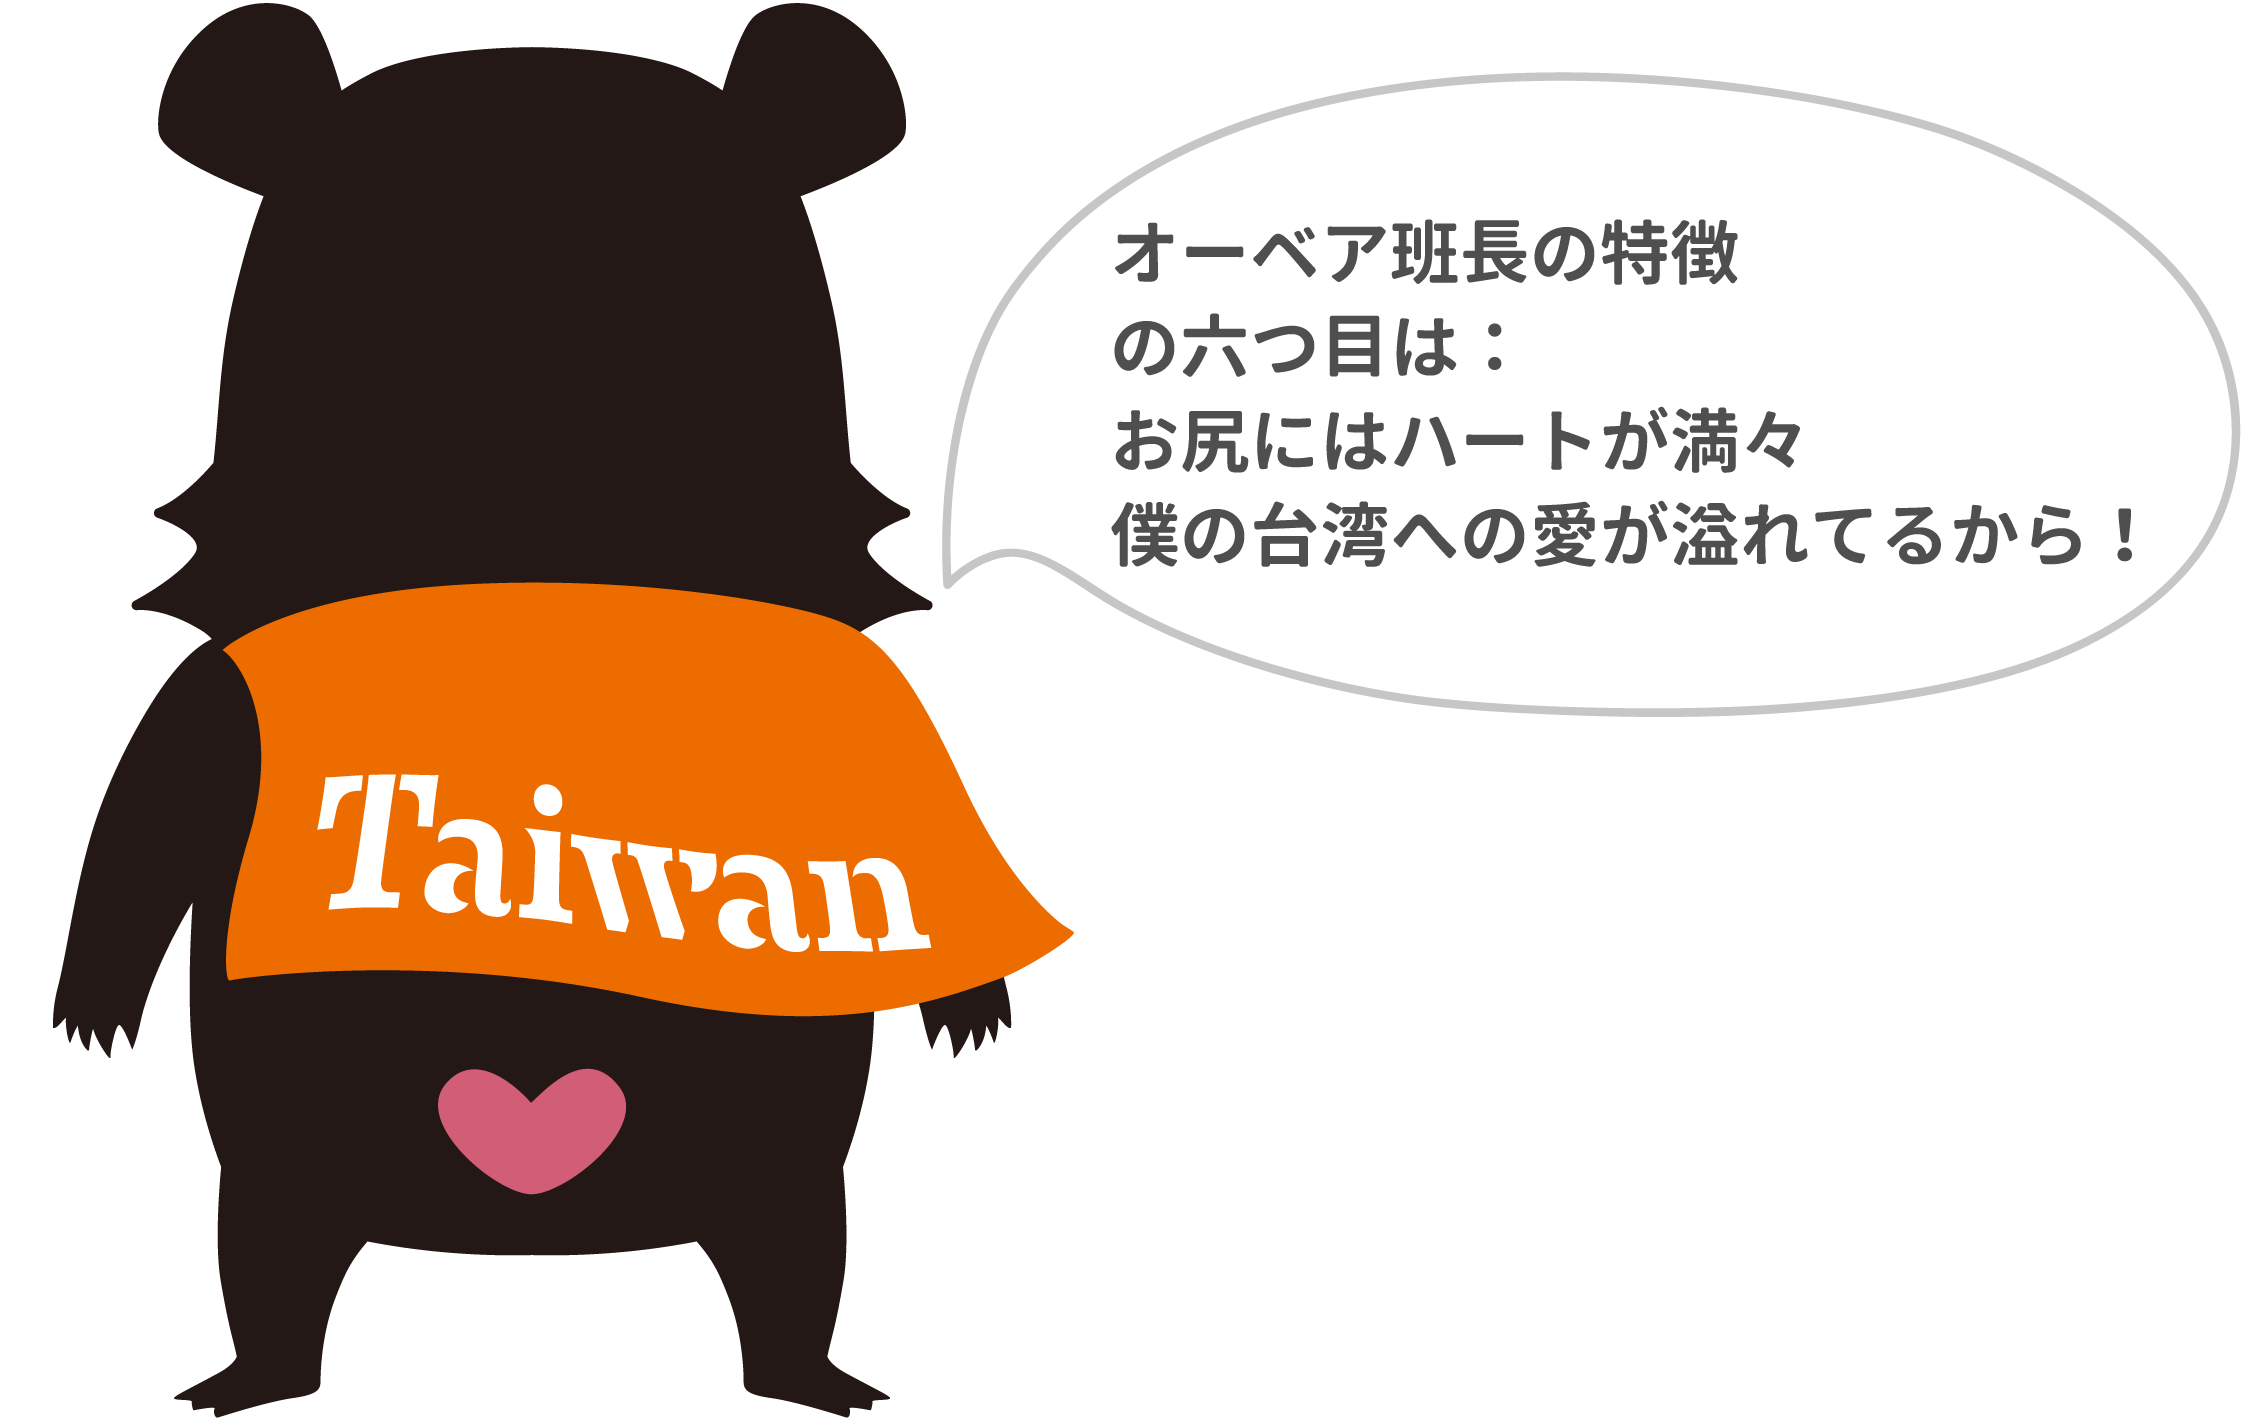 オーベア班長の特徴
の六つ目は：
お尻にはハートが満々
僕の台湾への愛が溢れてるから！
